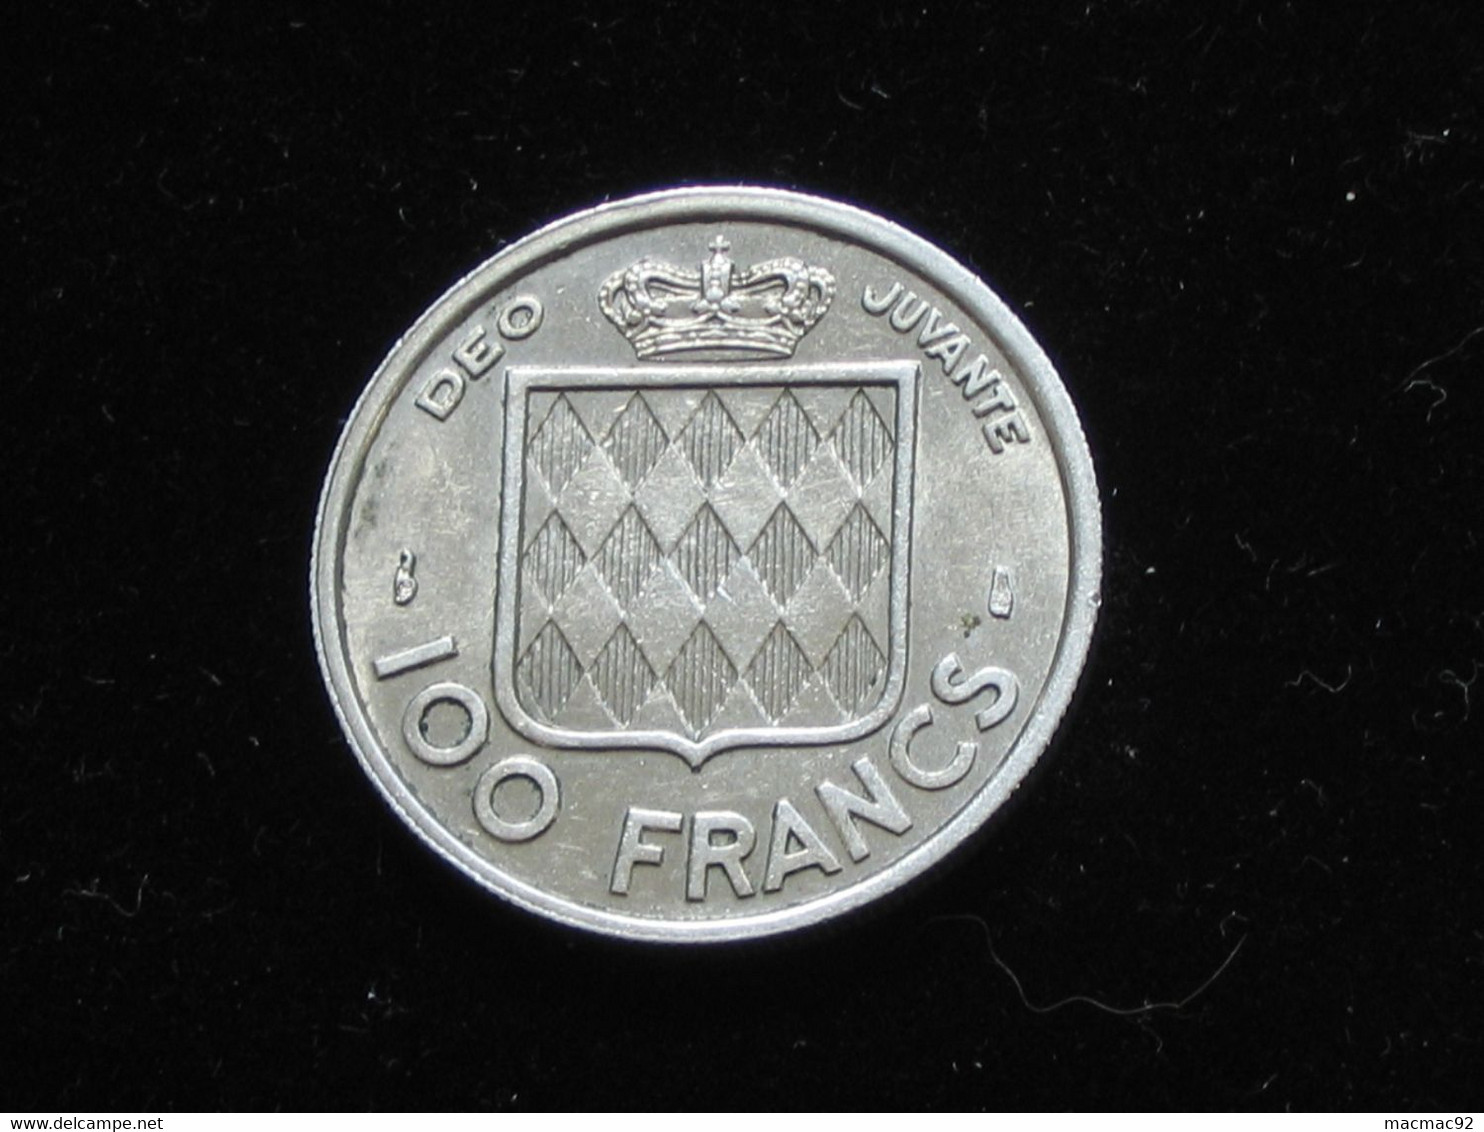 MONACO - 100 Frs 1956 - Rainier III Prince De Monaco **** EN ACHAT IMMEDIAT **** - 1949-1956 Oude Frank